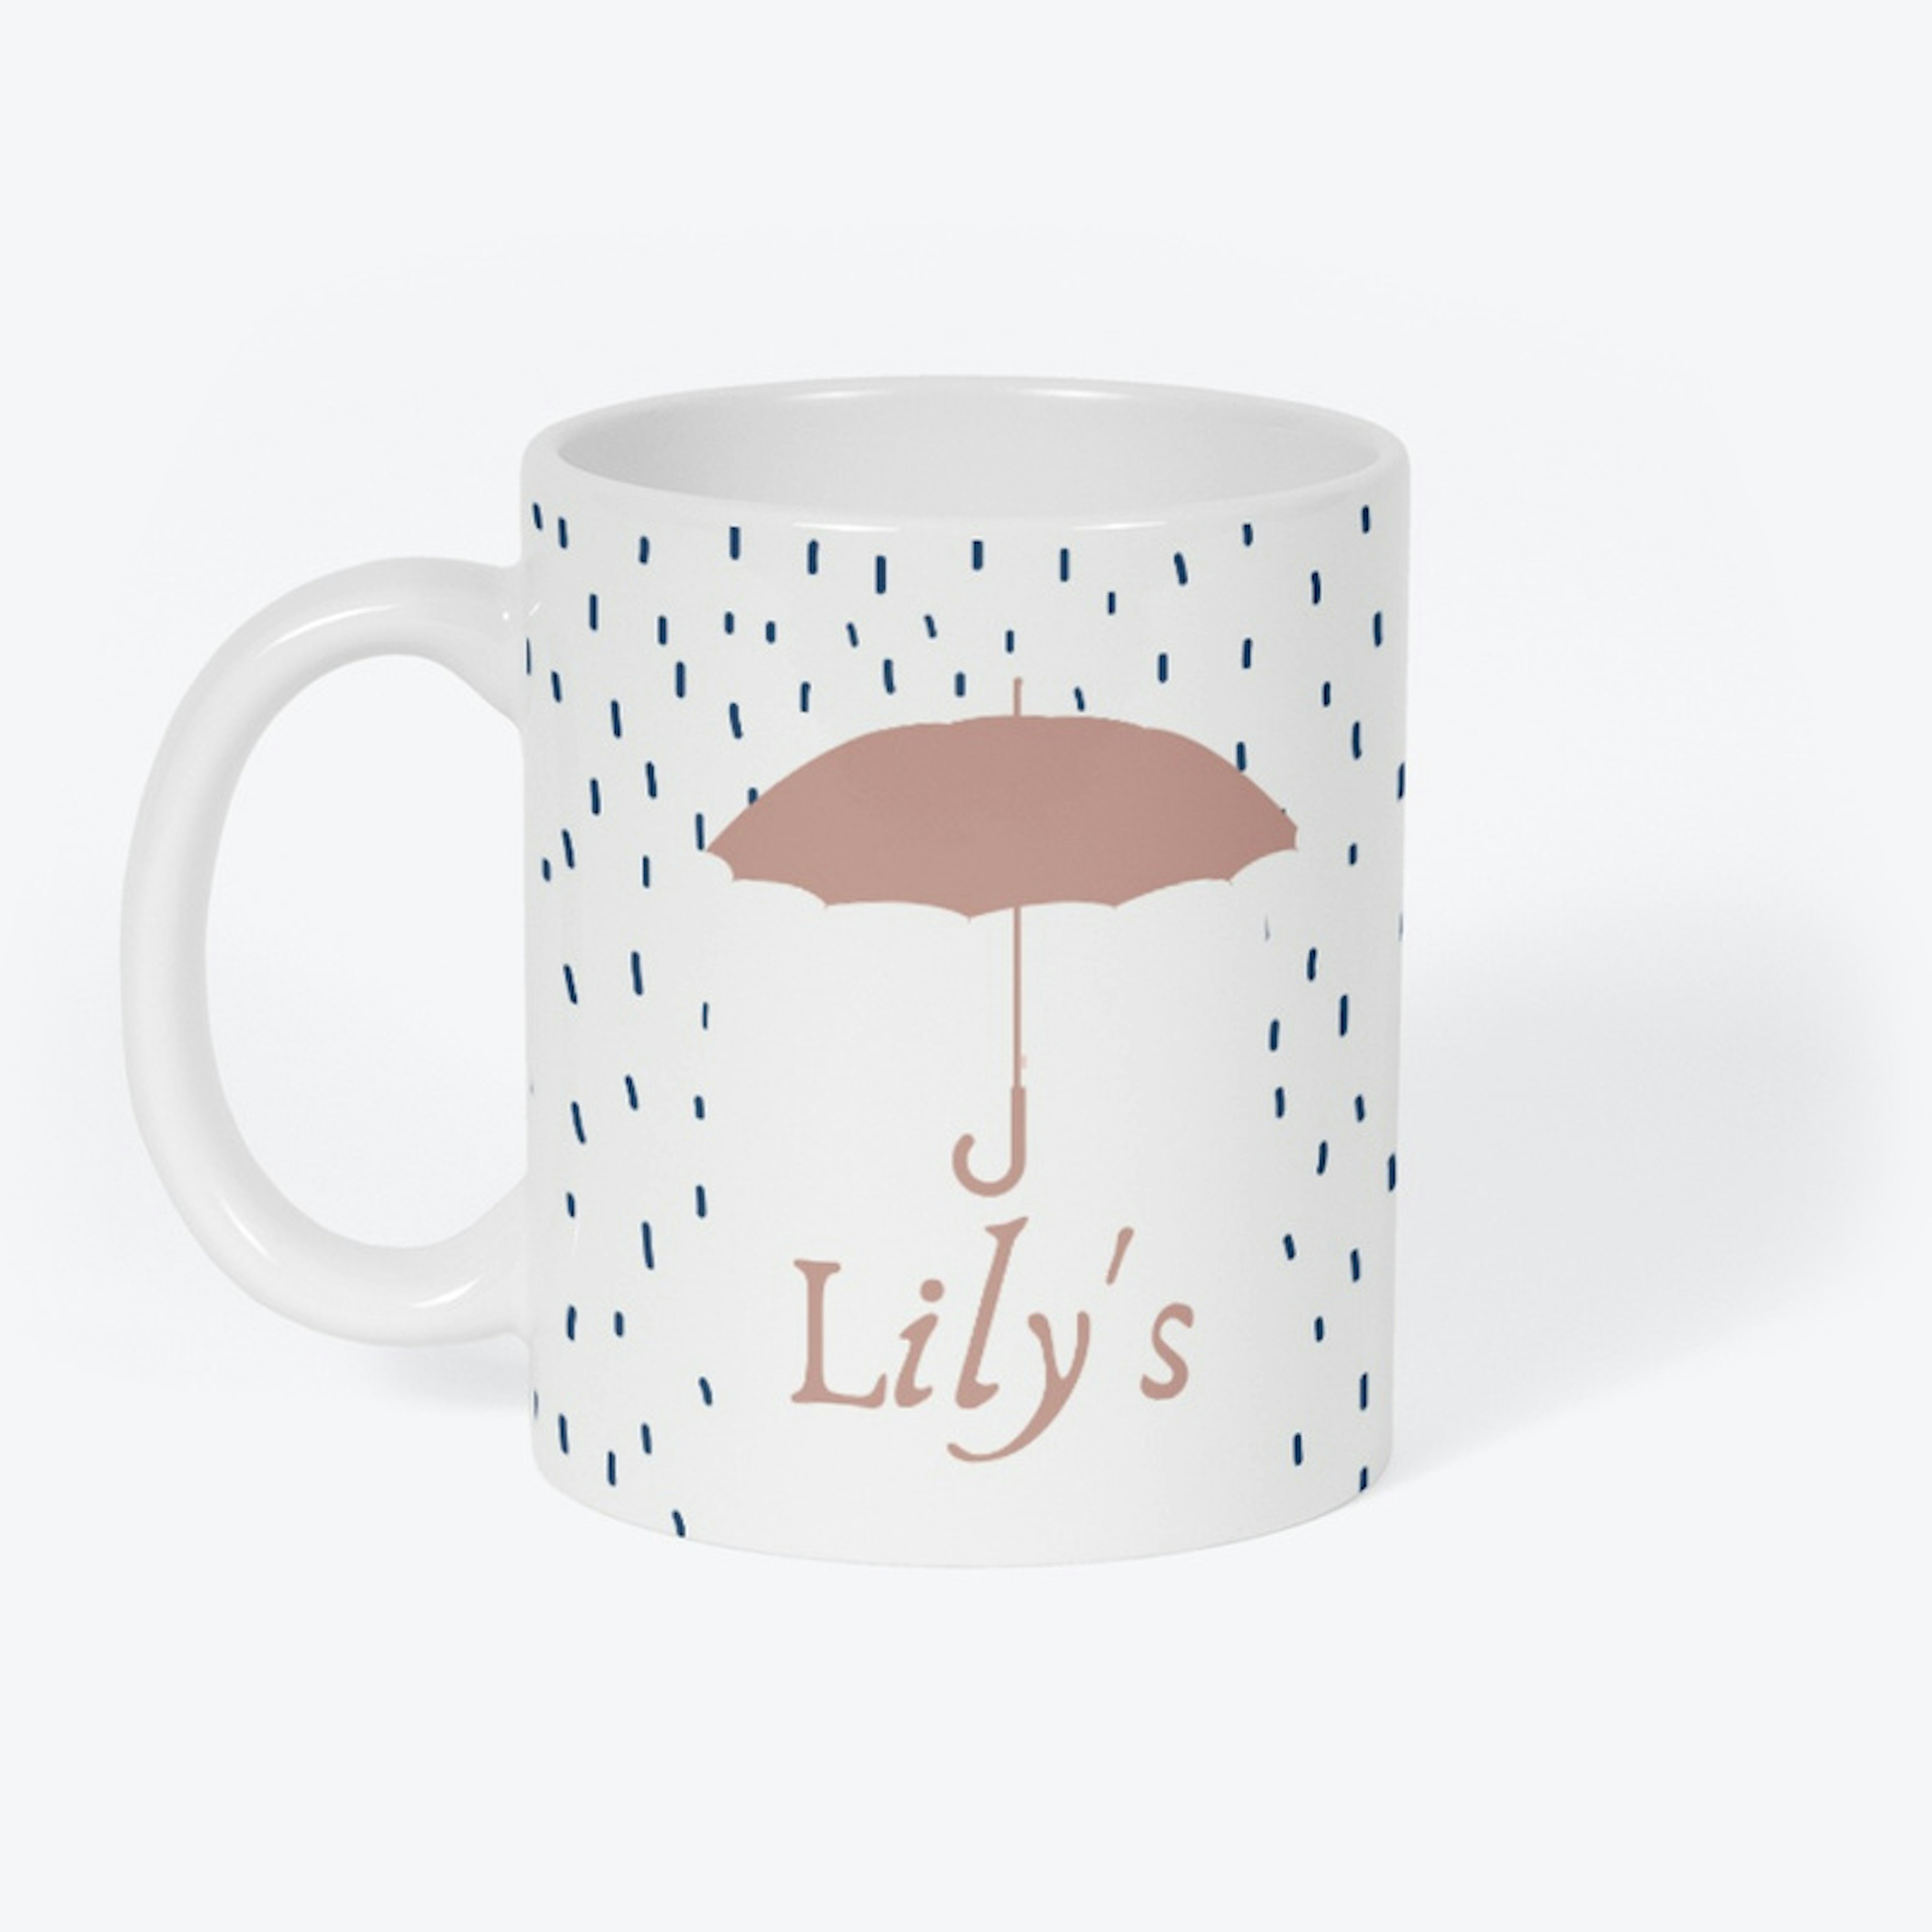 The Rainy Day Bakery Mug (Lily's)